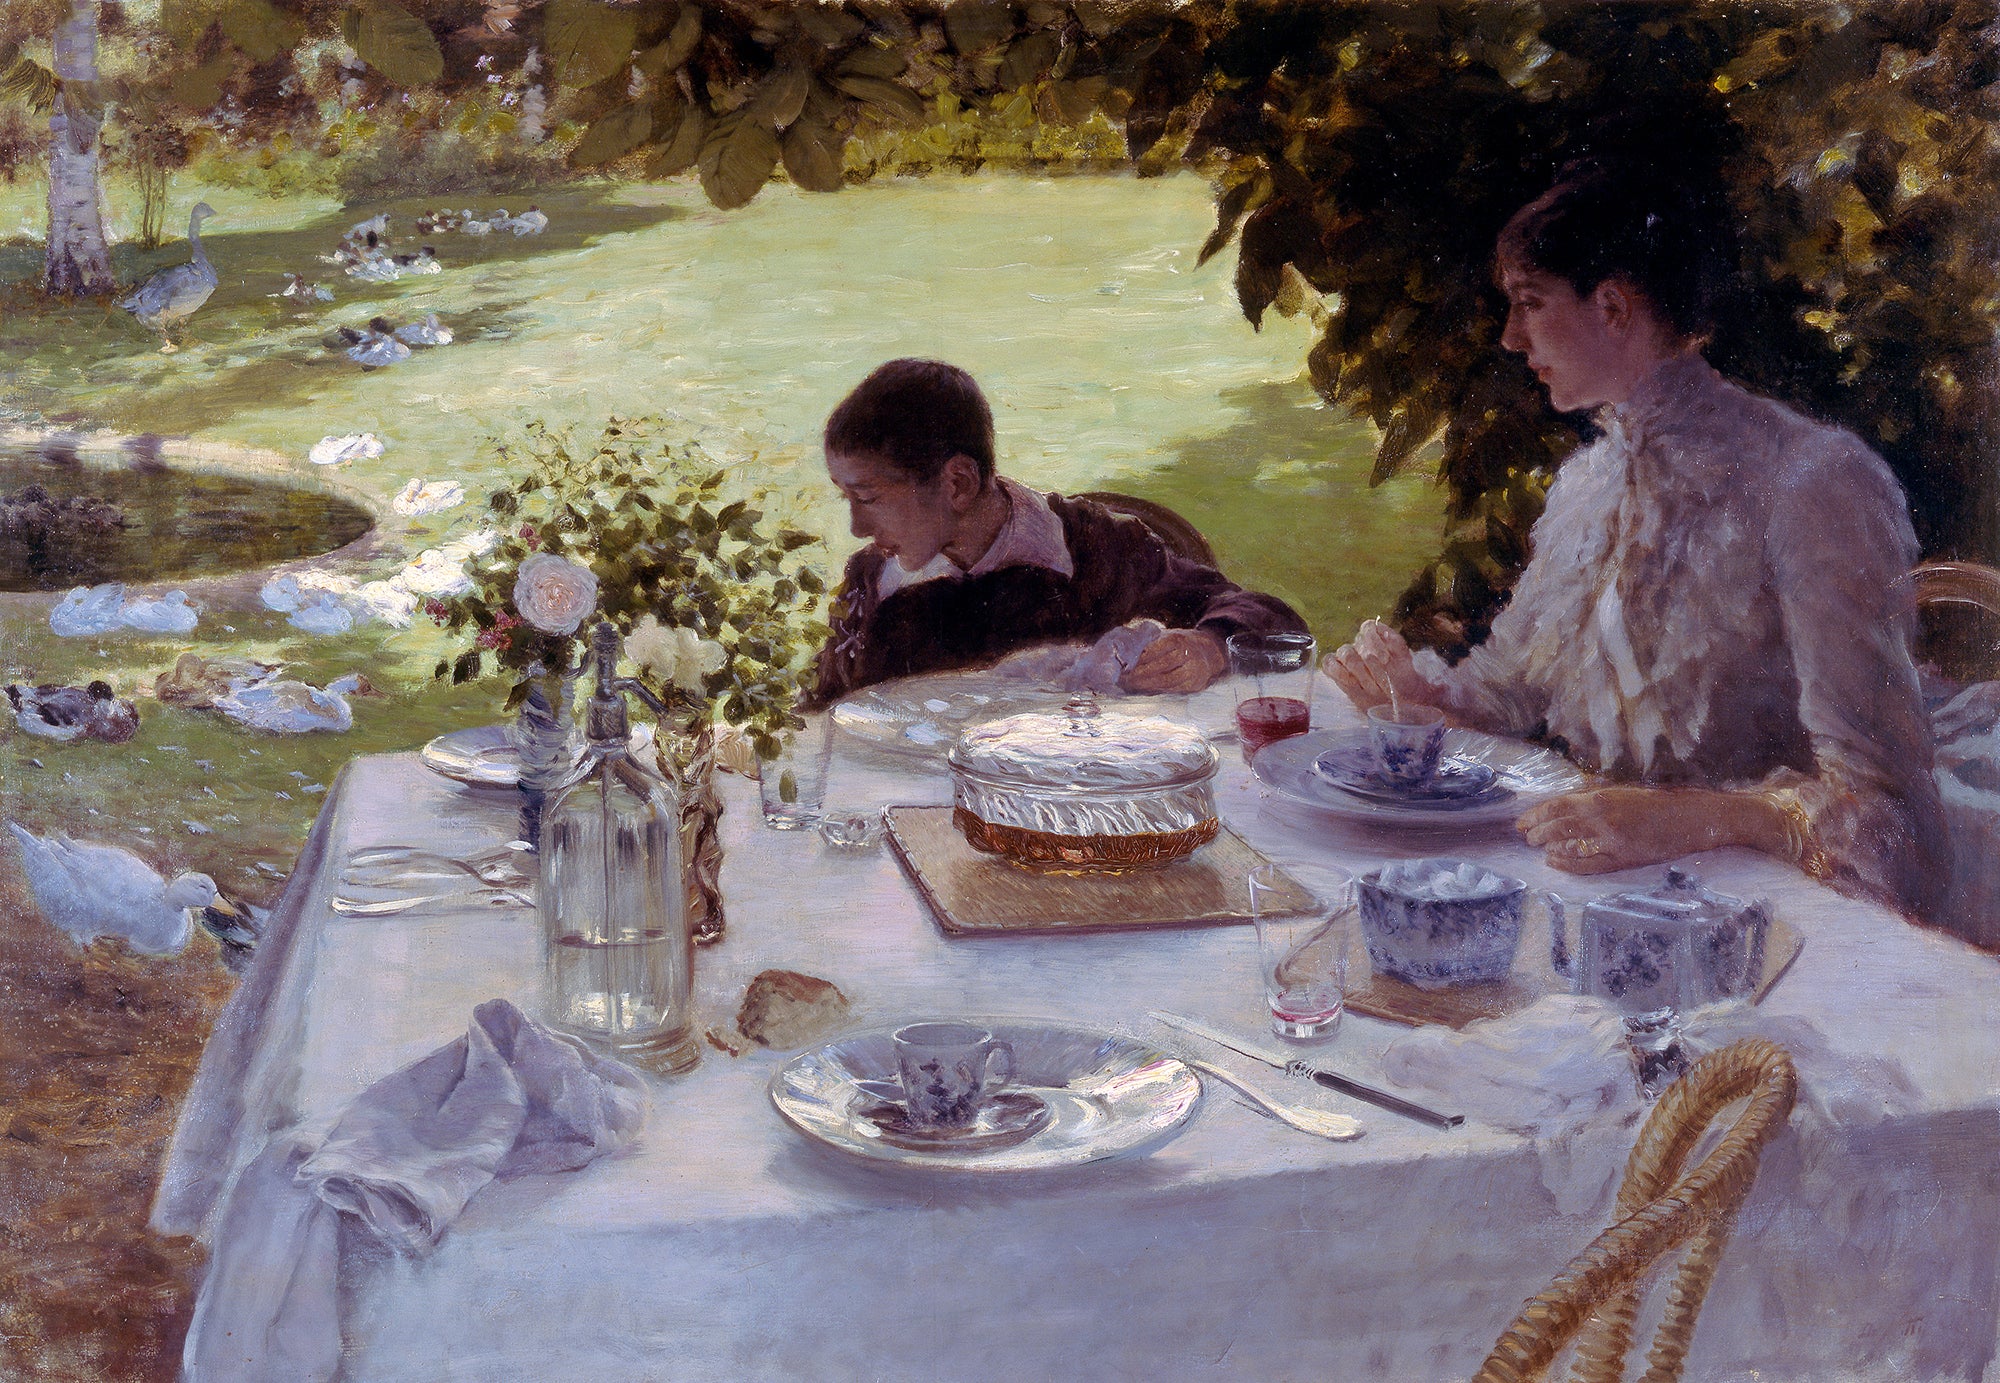 ‘Breakfast in the Garden’ by Giuseppe De Nittis’s, 1884